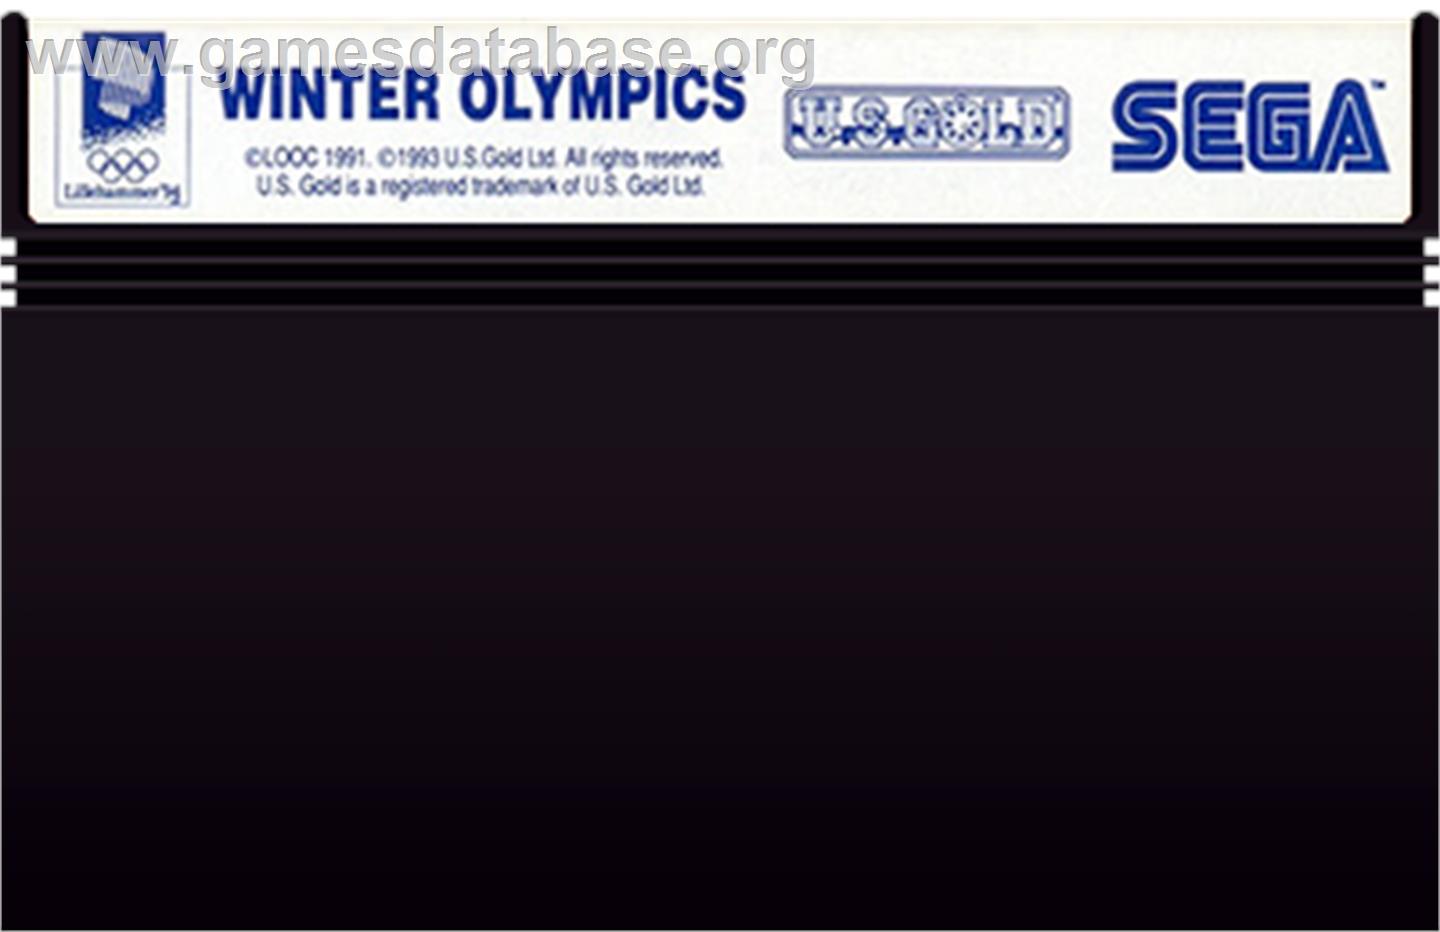 Winter Olympics: Lillehammer '94 - Sega Master System - Artwork - Cartridge